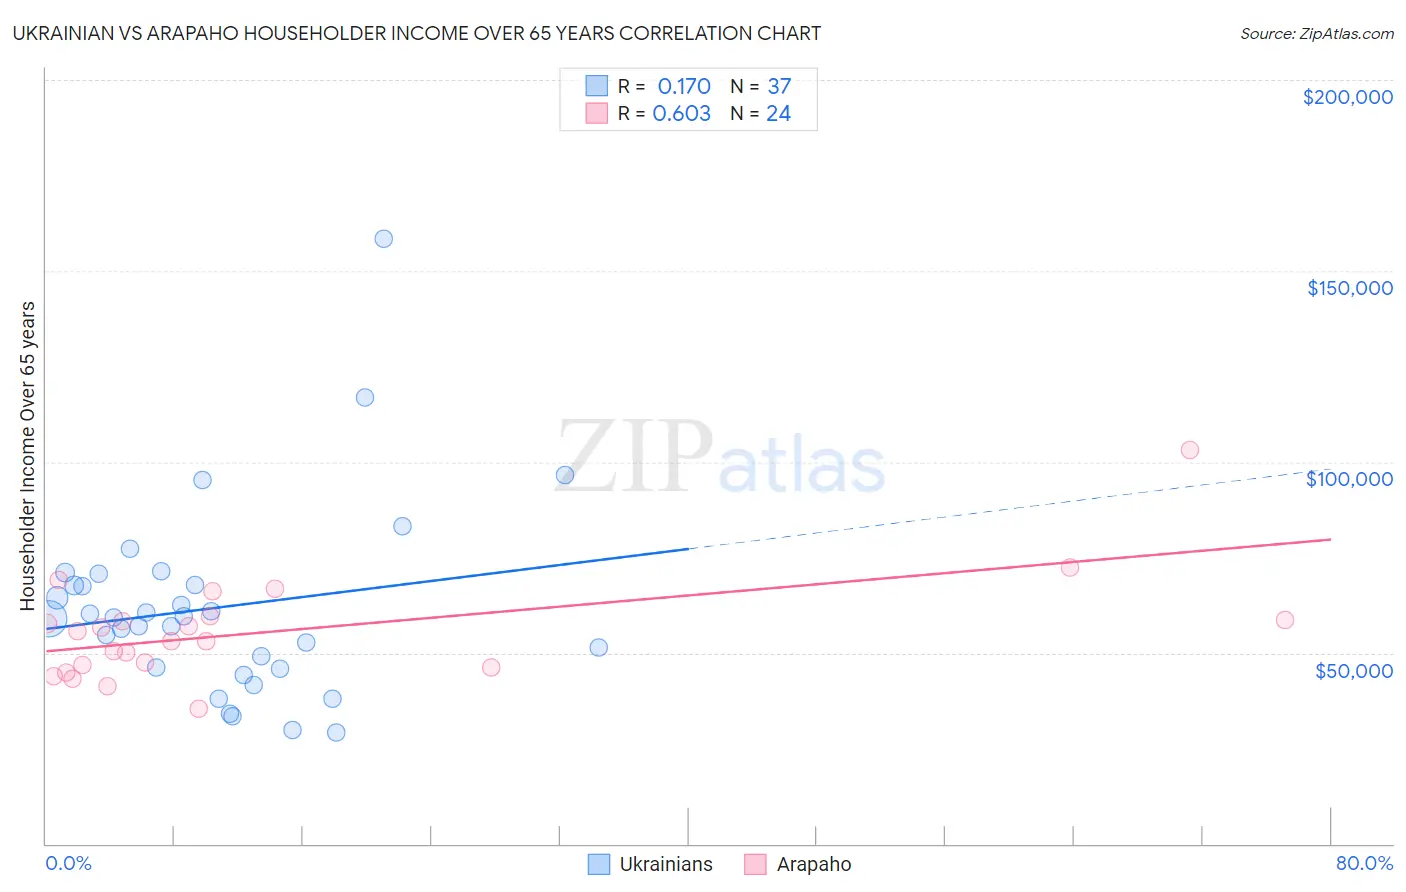 Ukrainian vs Arapaho Householder Income Over 65 years